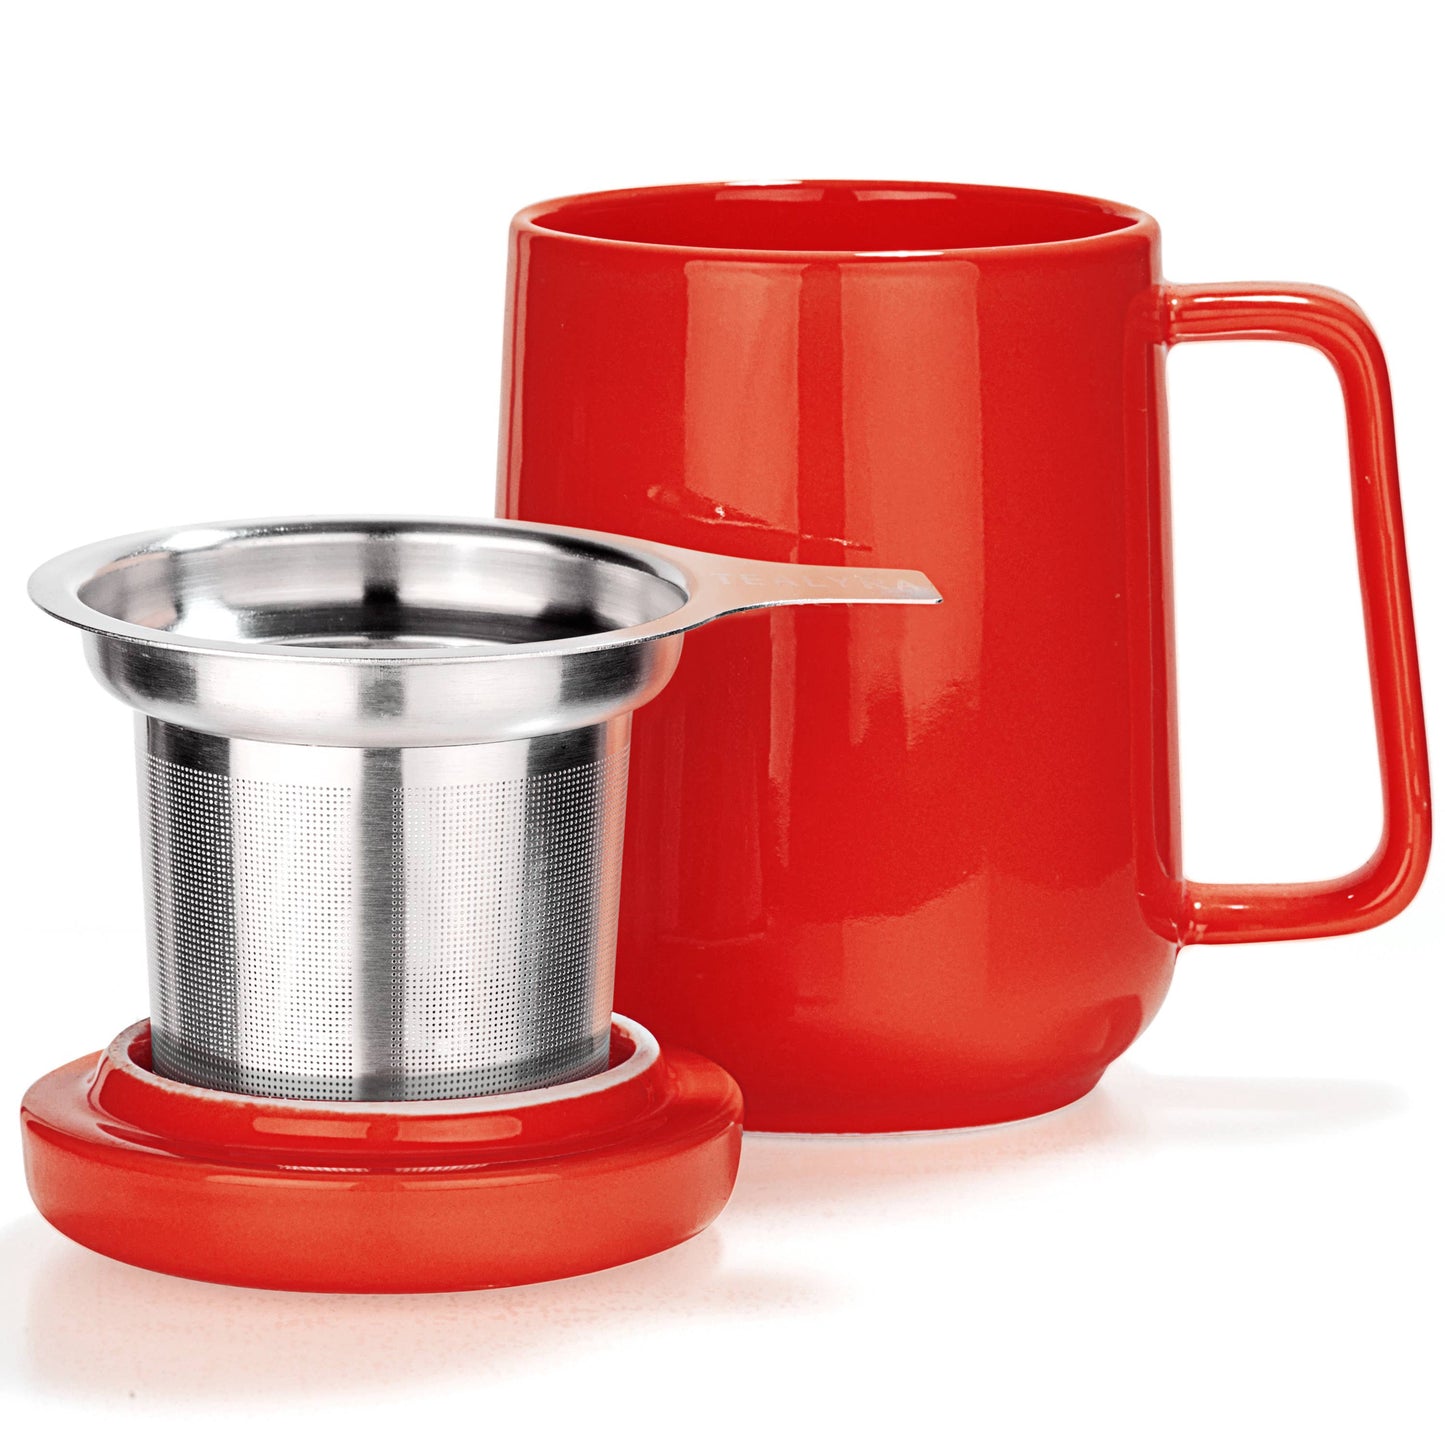 Peak Red Porcelain Mug With Infuser 19oz